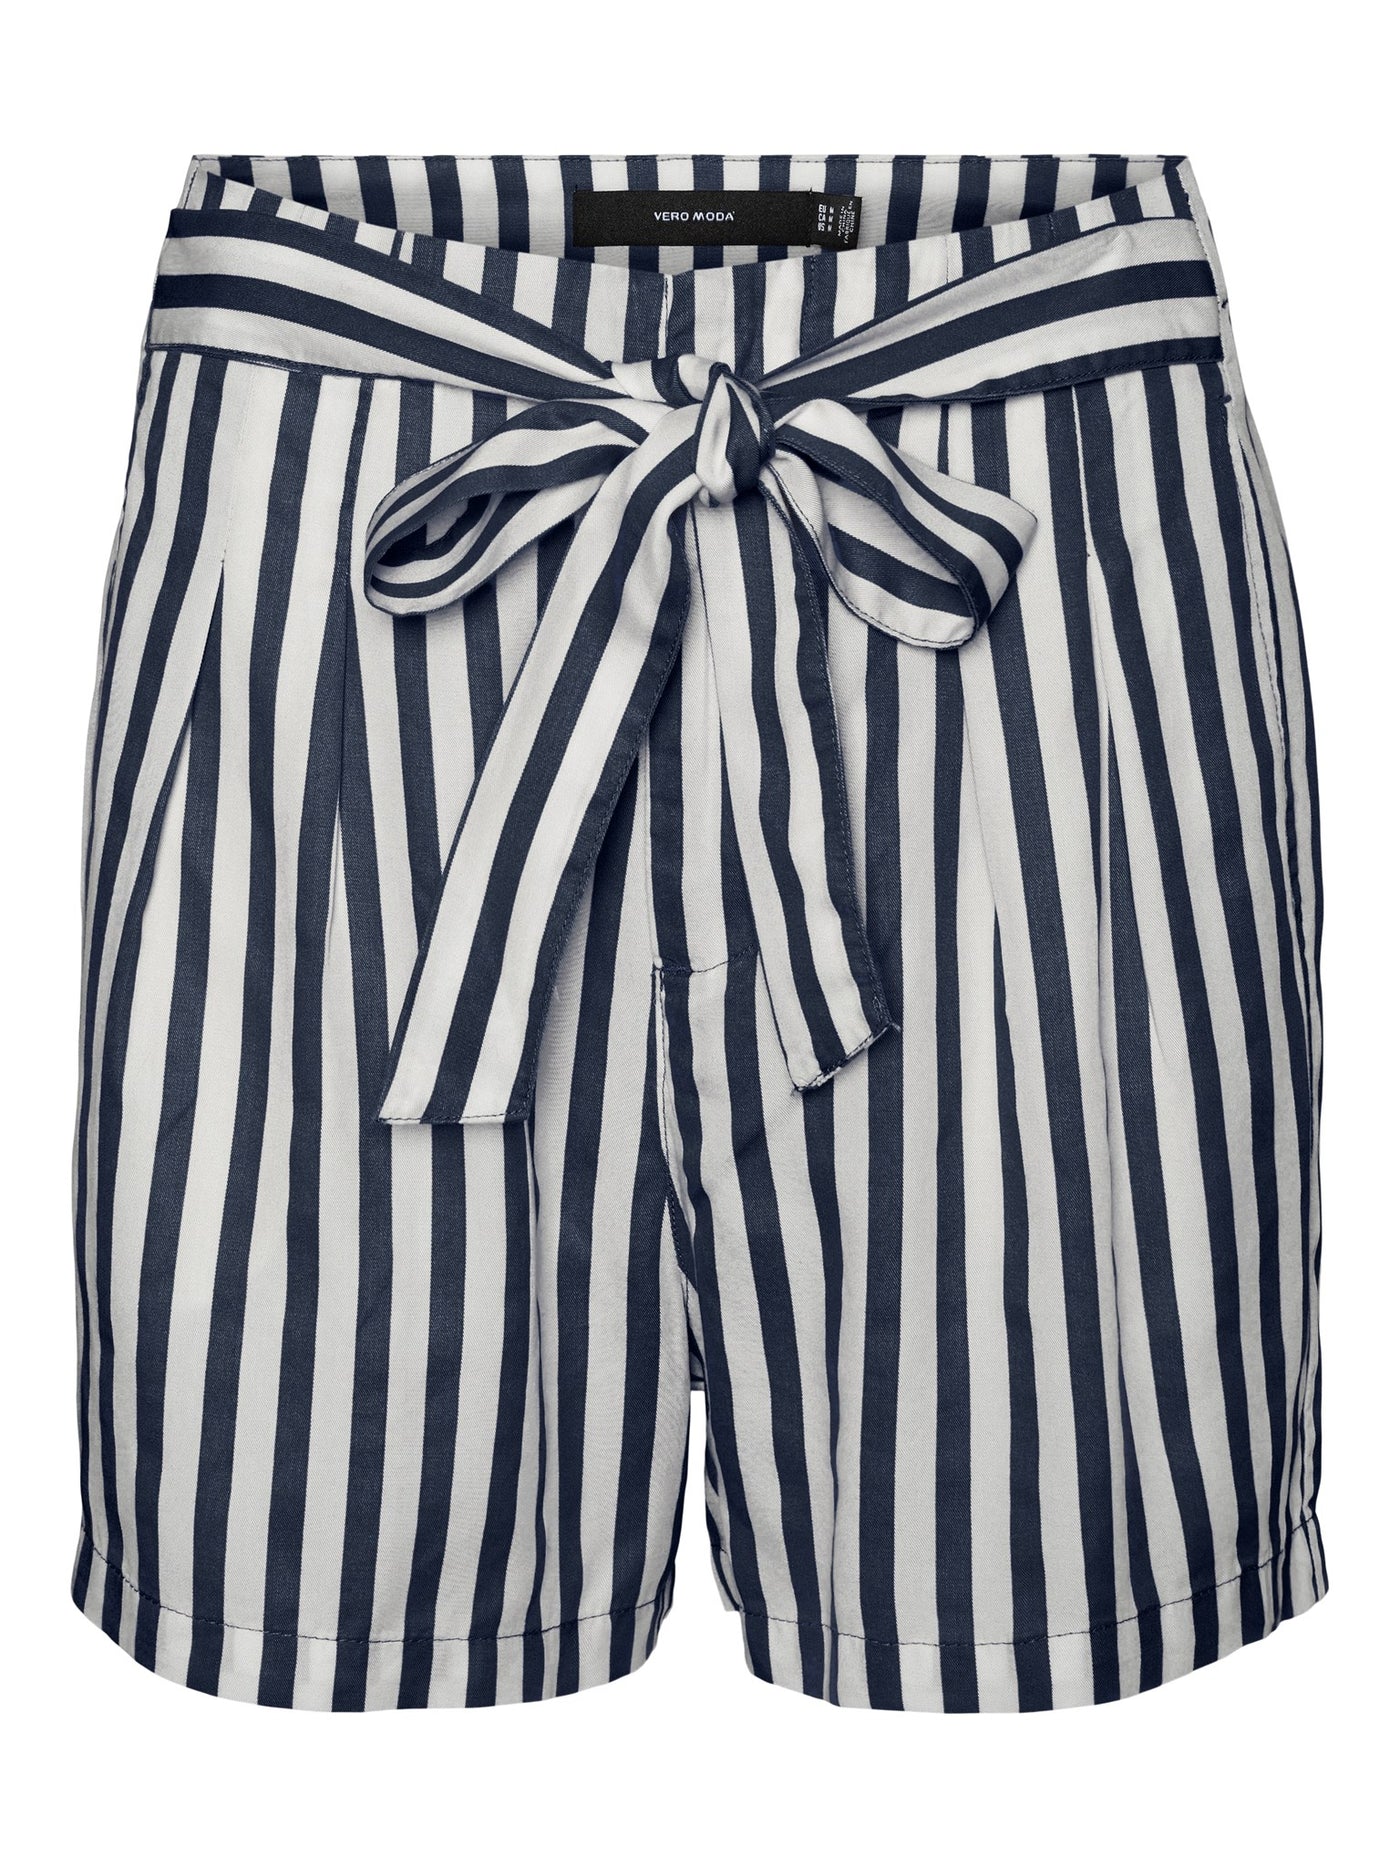 Mia Loose Summer Shorts - Navy Stripete - Vero Moda